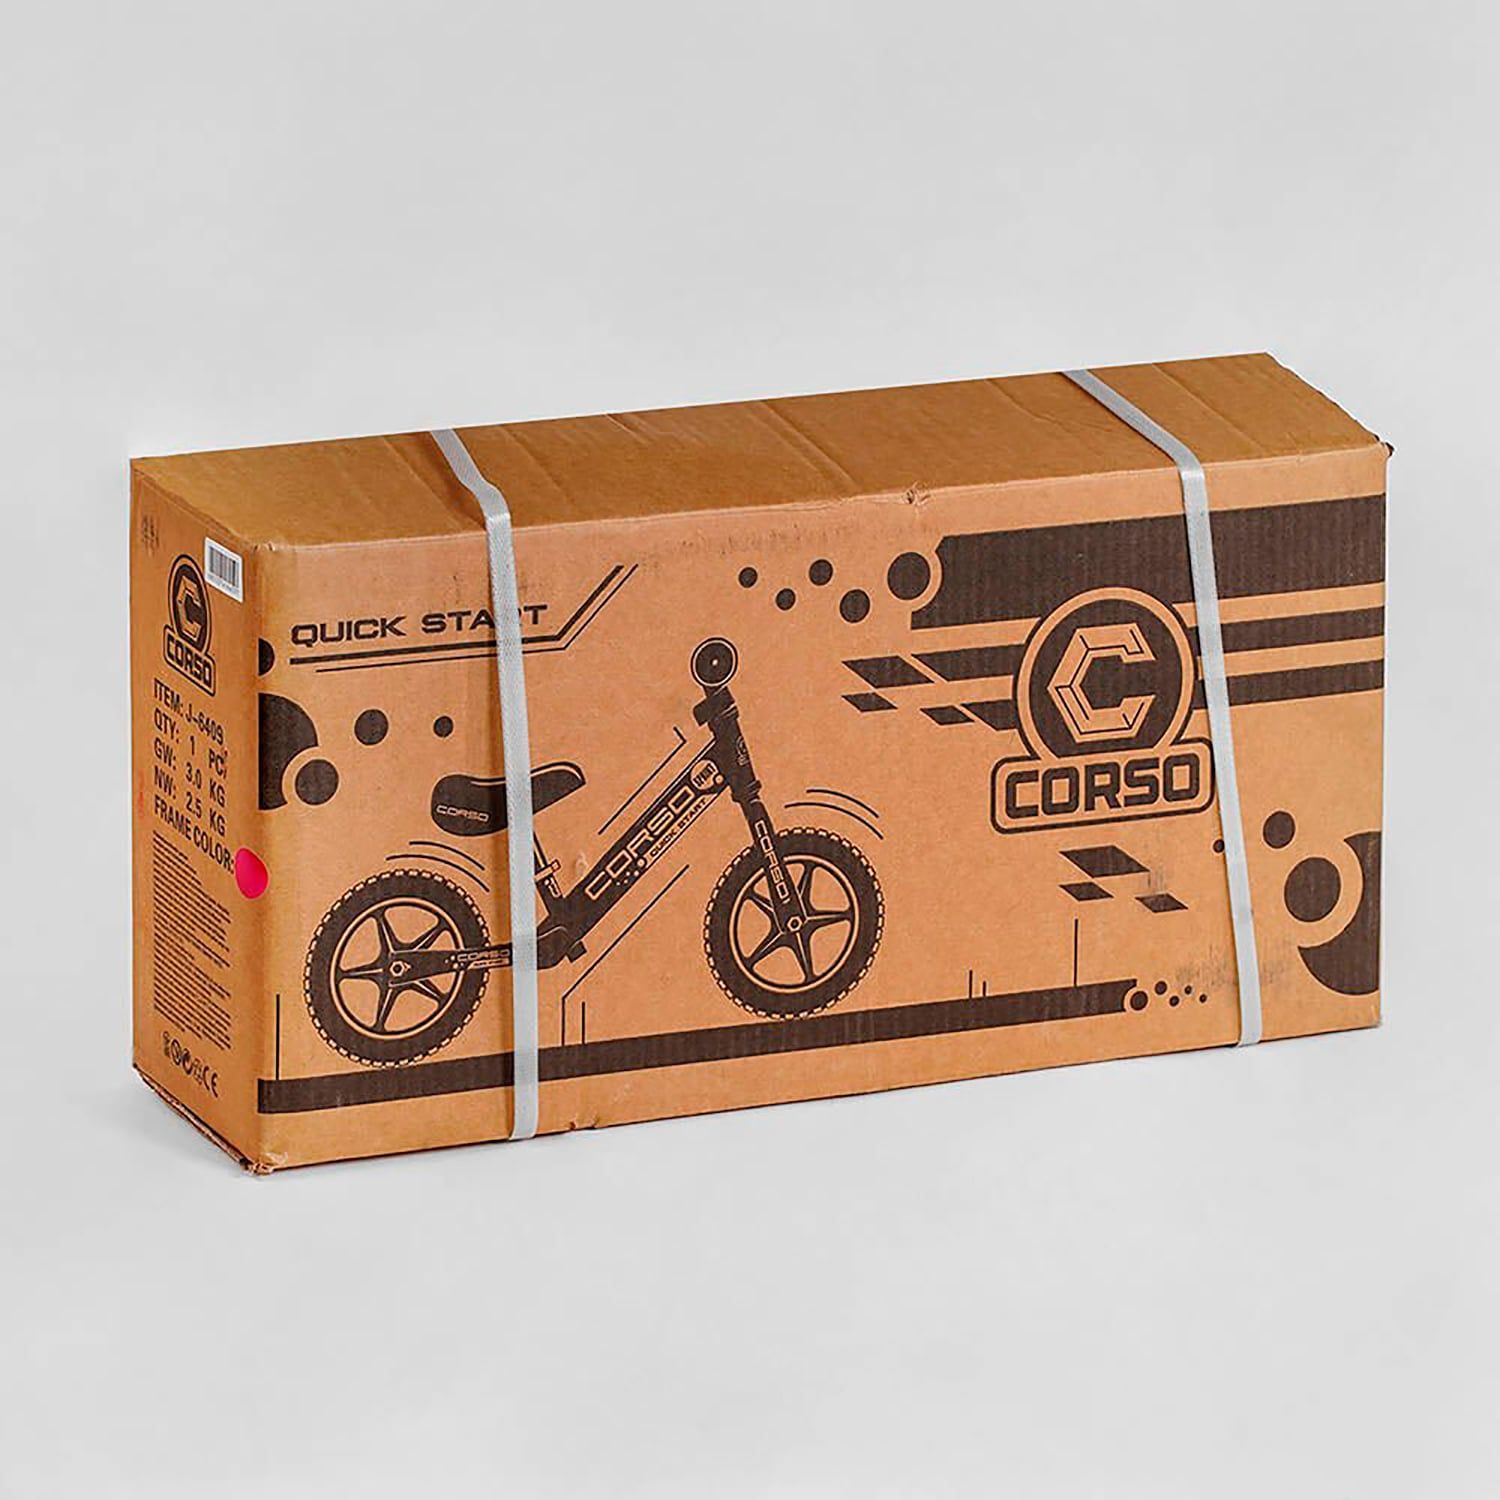 Велобіг для малюків CORSO (J-2112) сталева рама, колесо 12" EVA підставка для ніжок